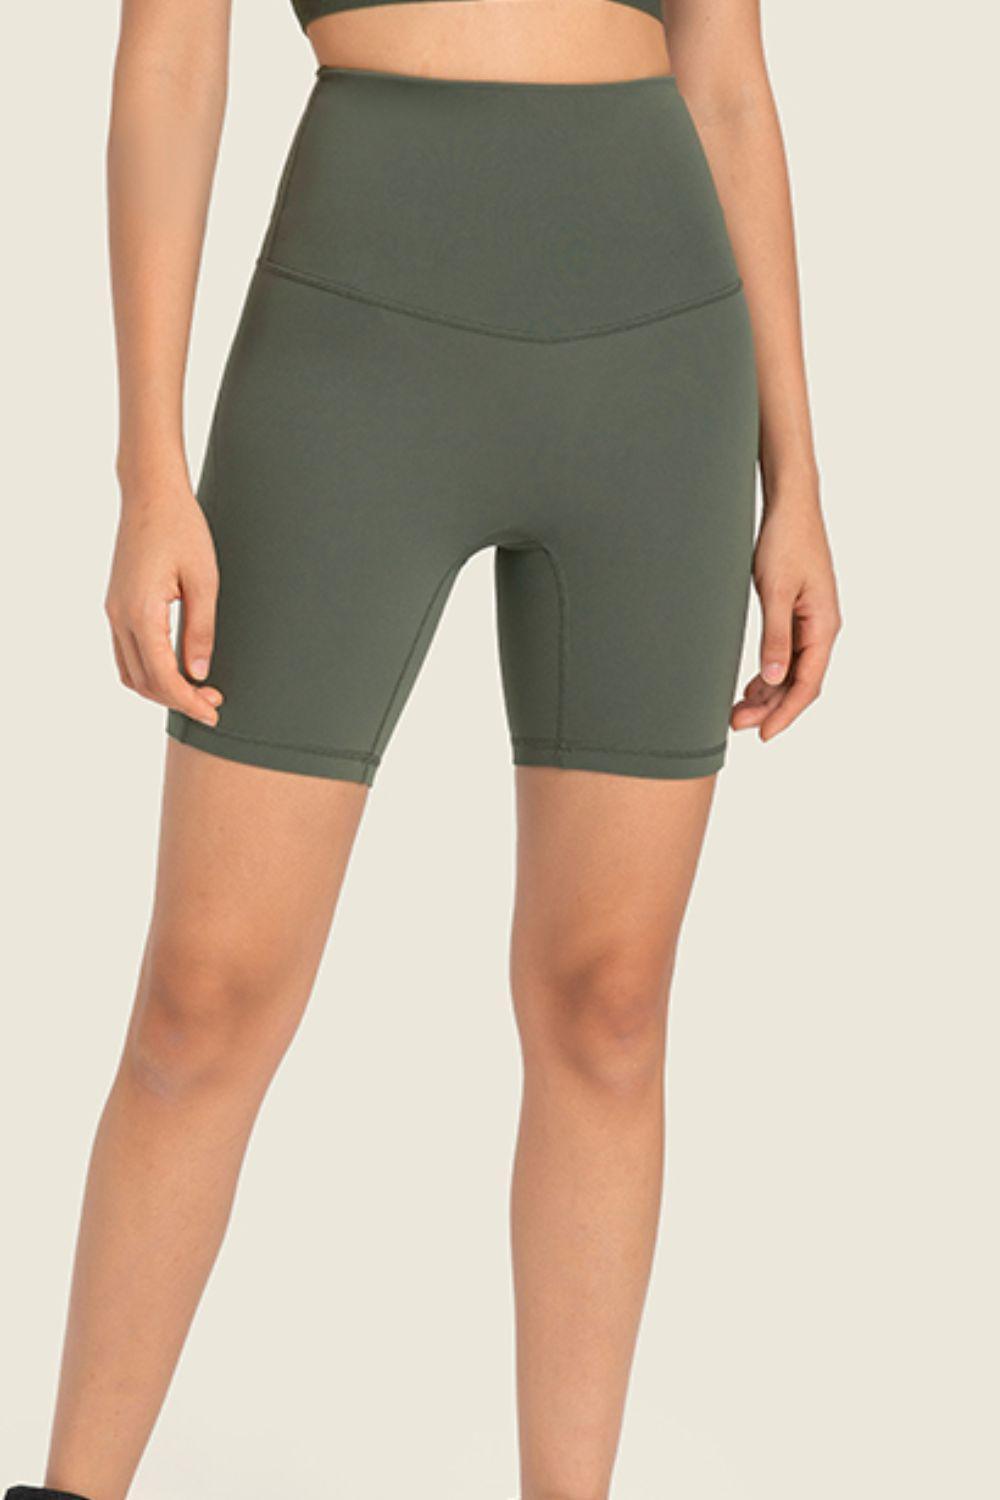 Women's Ultimate Support Biker Shorts - MXSTUDIO.COM